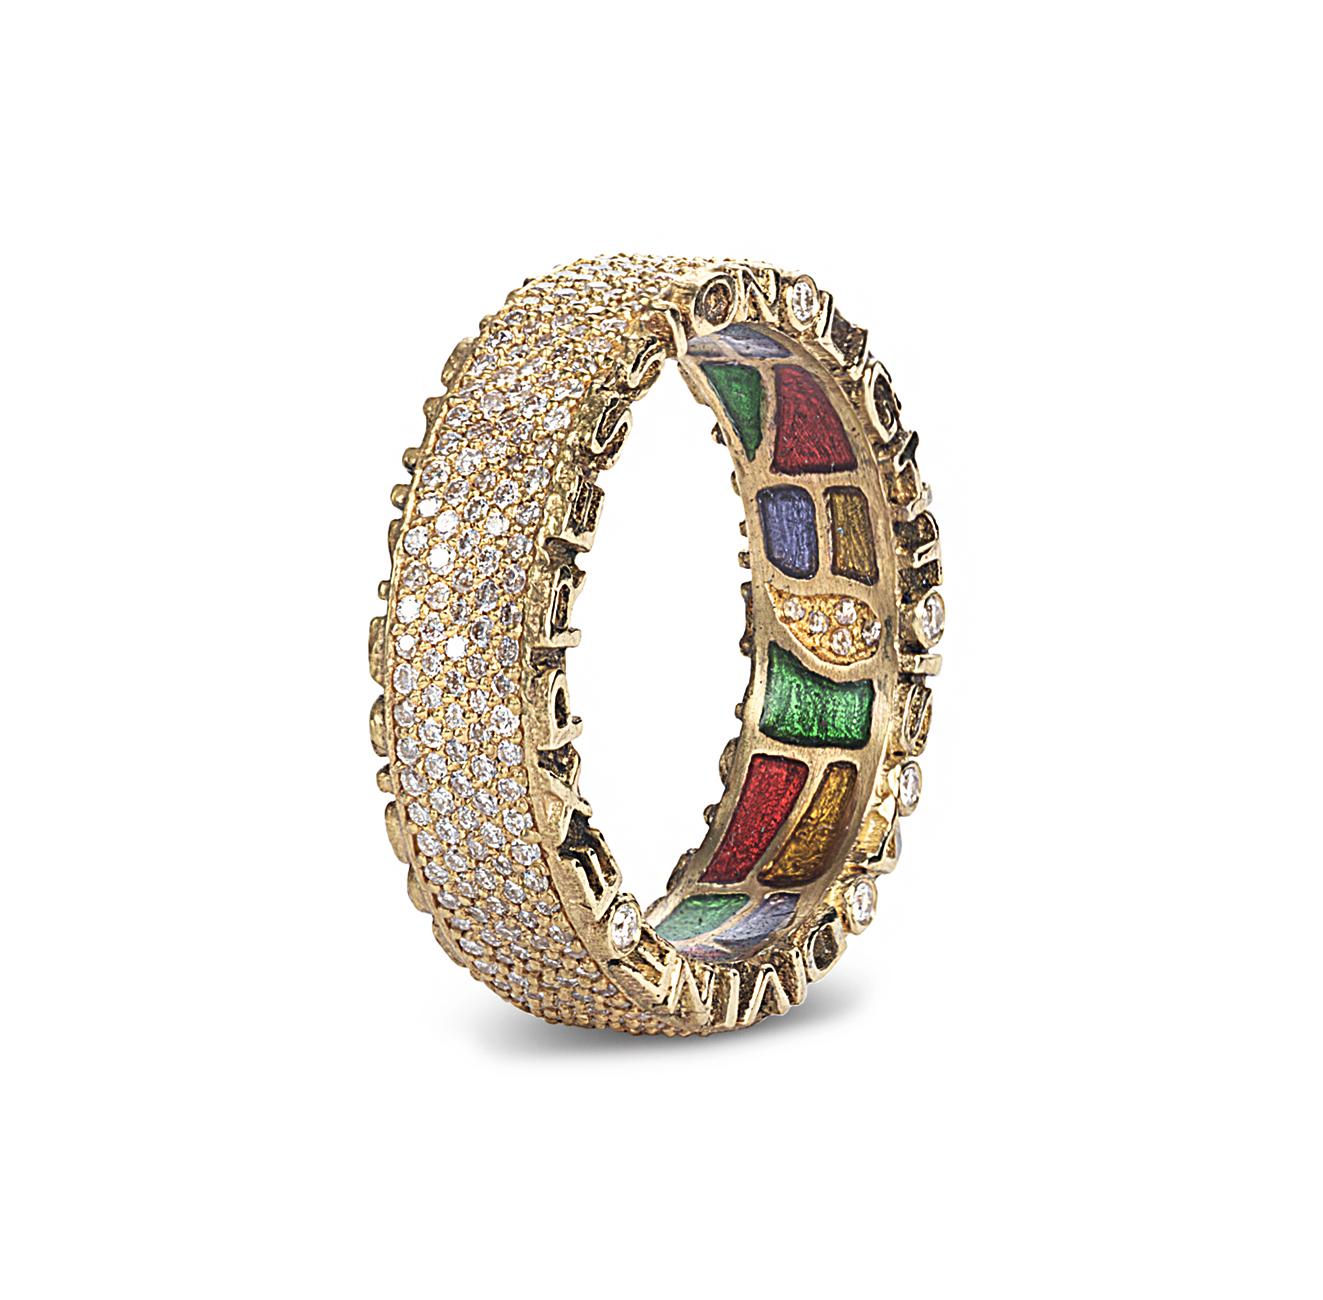 Handgefertigter Ring aus der Coomi Sagrada Kollektion in 20 Karat Gelbgold mit 1,12 Karat Diamanten. Der Text lautet 